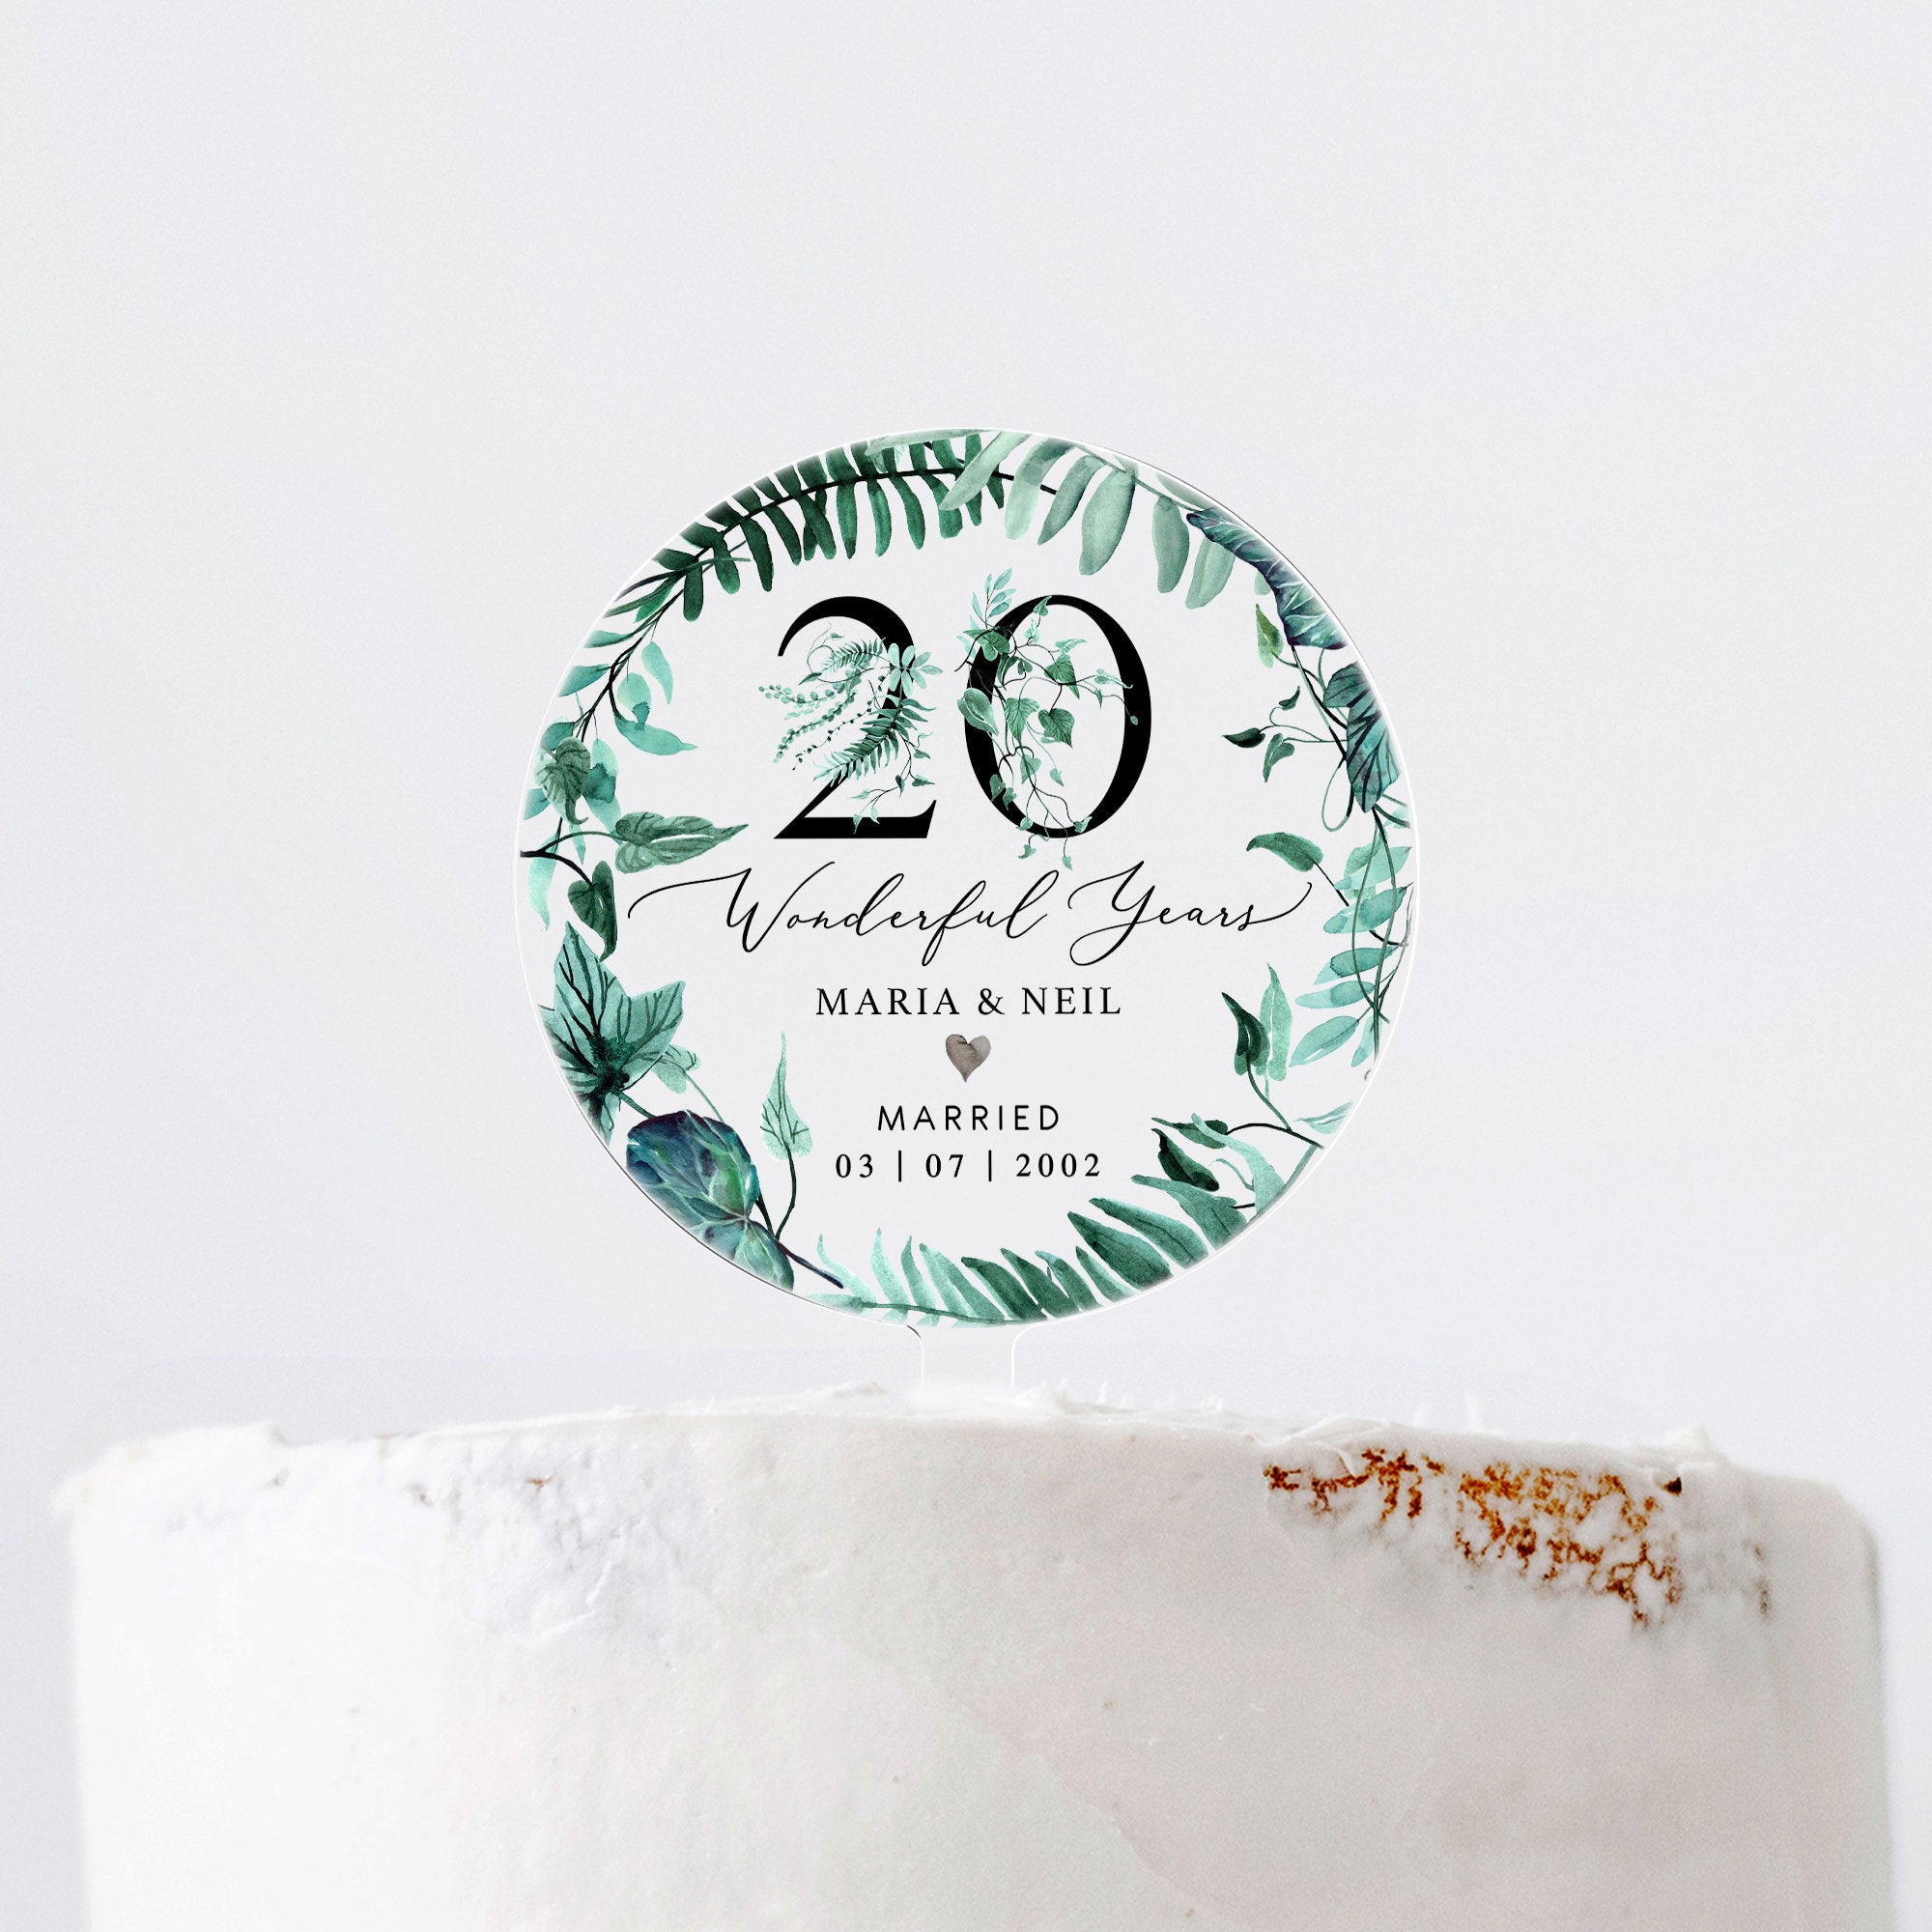 Anniversary cake ten years stock image. Image of plain - 75292485